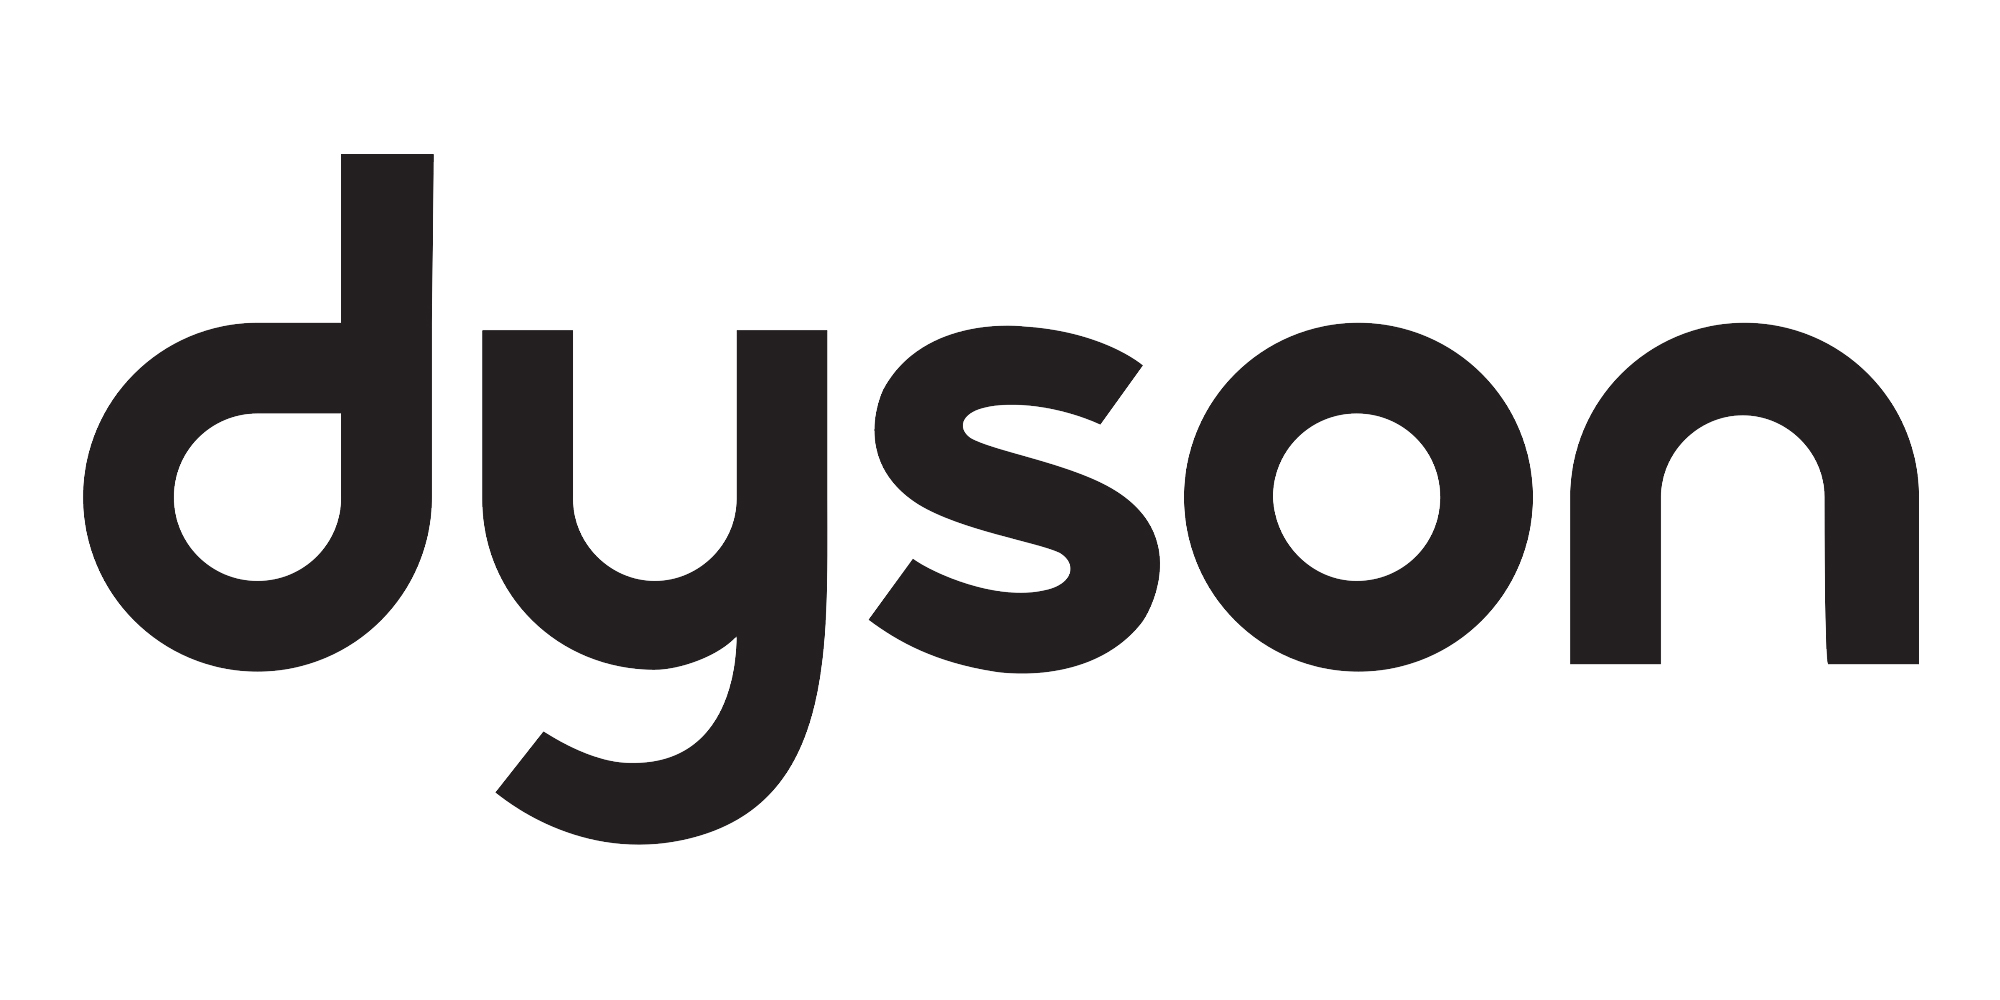 Логотип Dyson